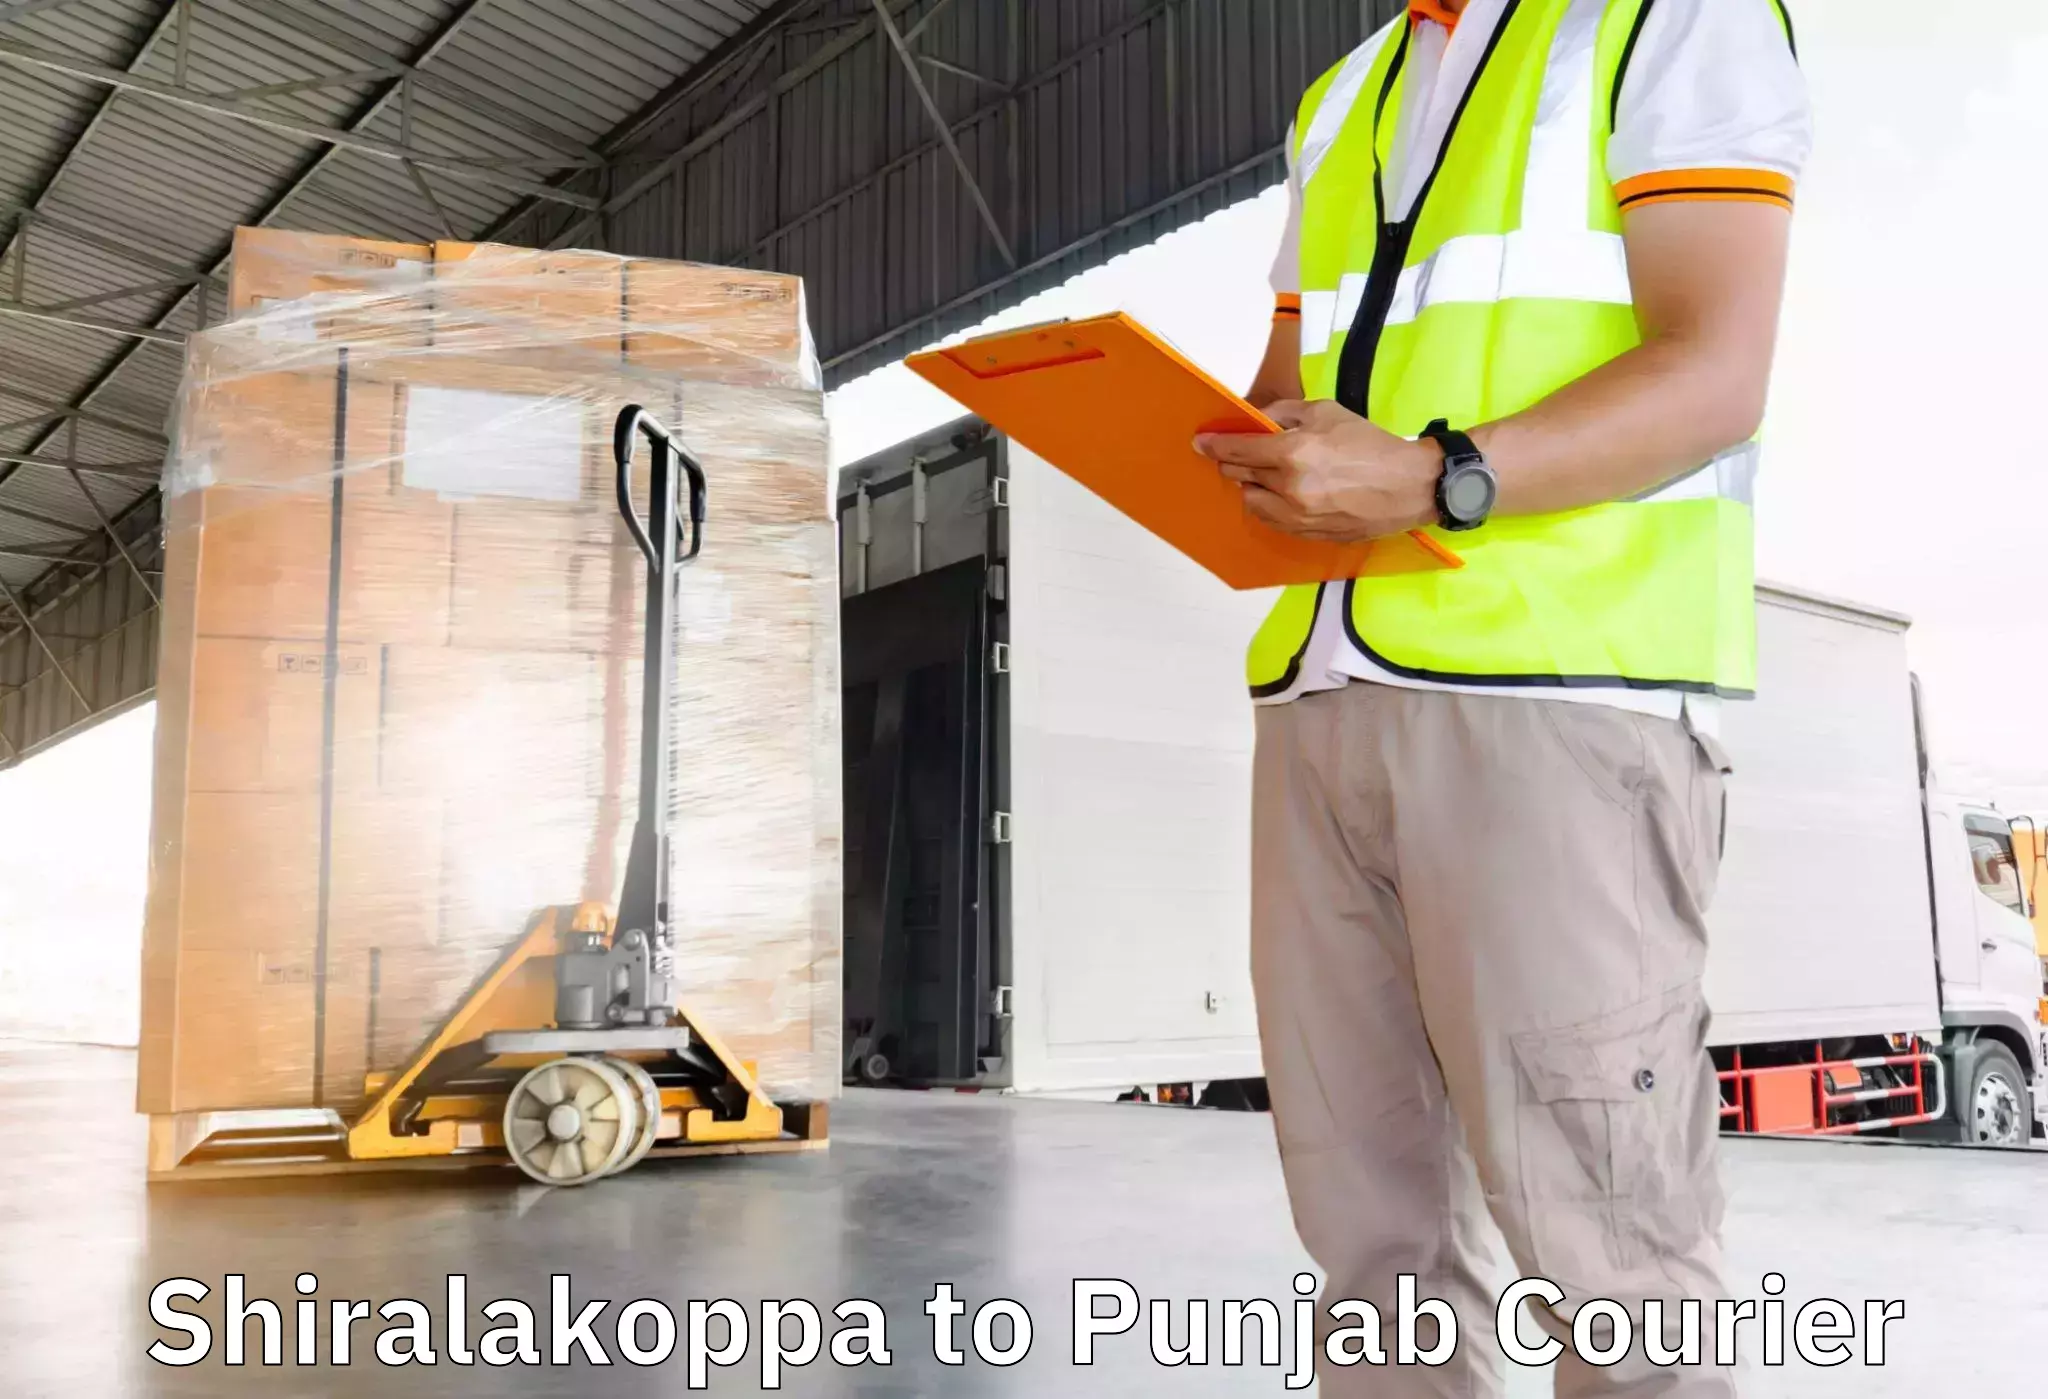 Efficient moving company Shiralakoppa to Jalalabad